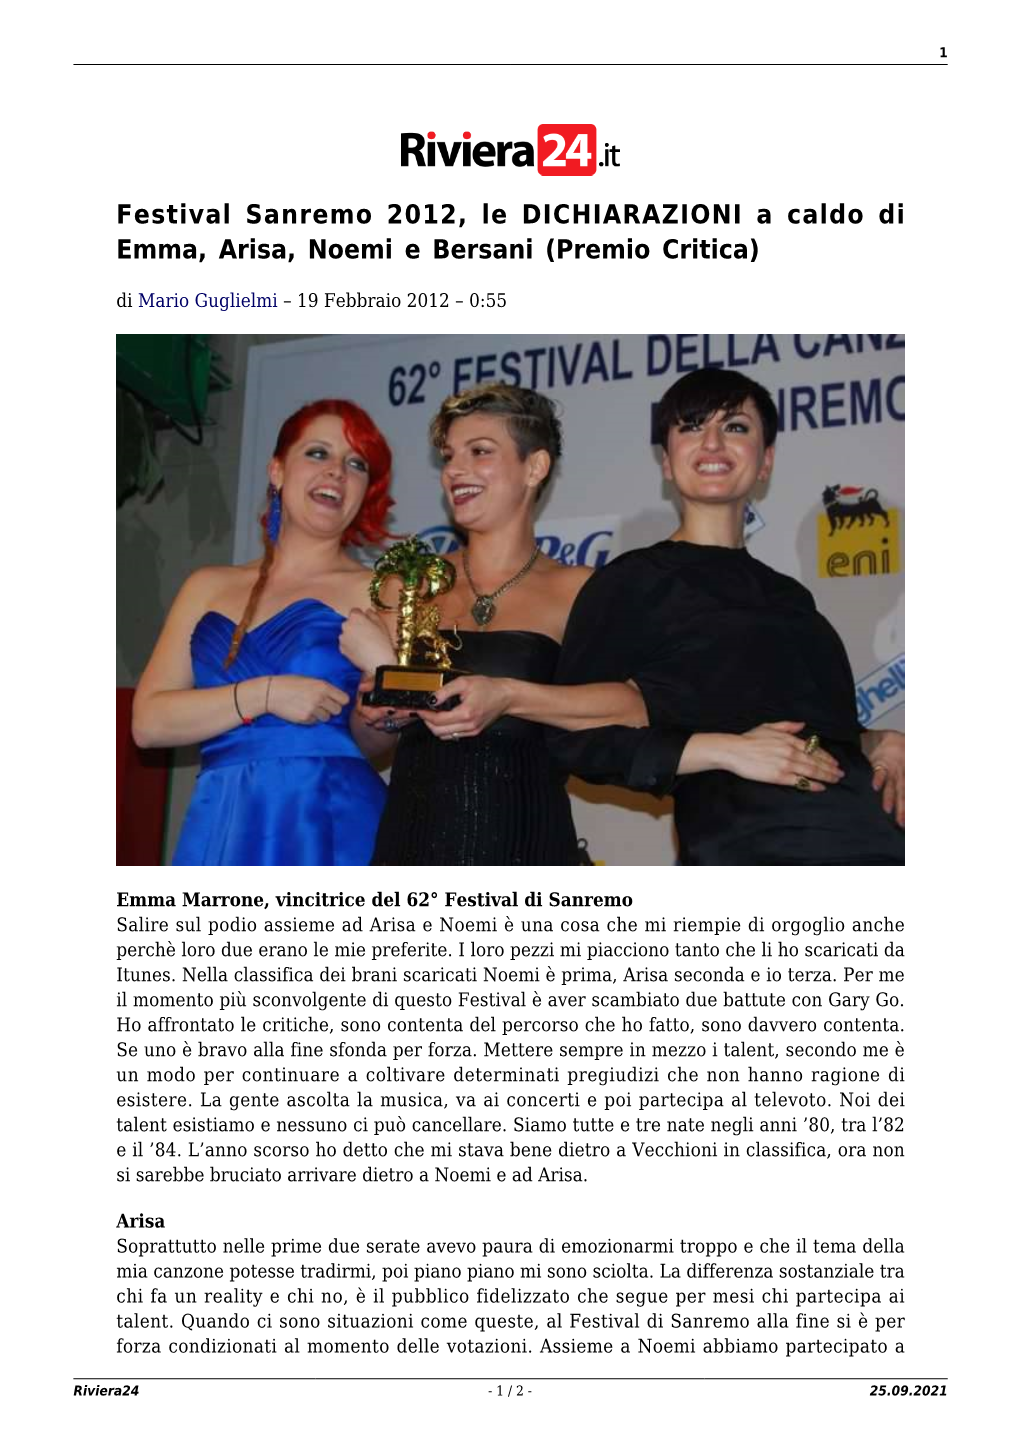 Festival Sanremo 2012, Le DICHIARAZIONI a Caldo Di Emma, Arisa, Noemi E Bersani (Premio Critica)